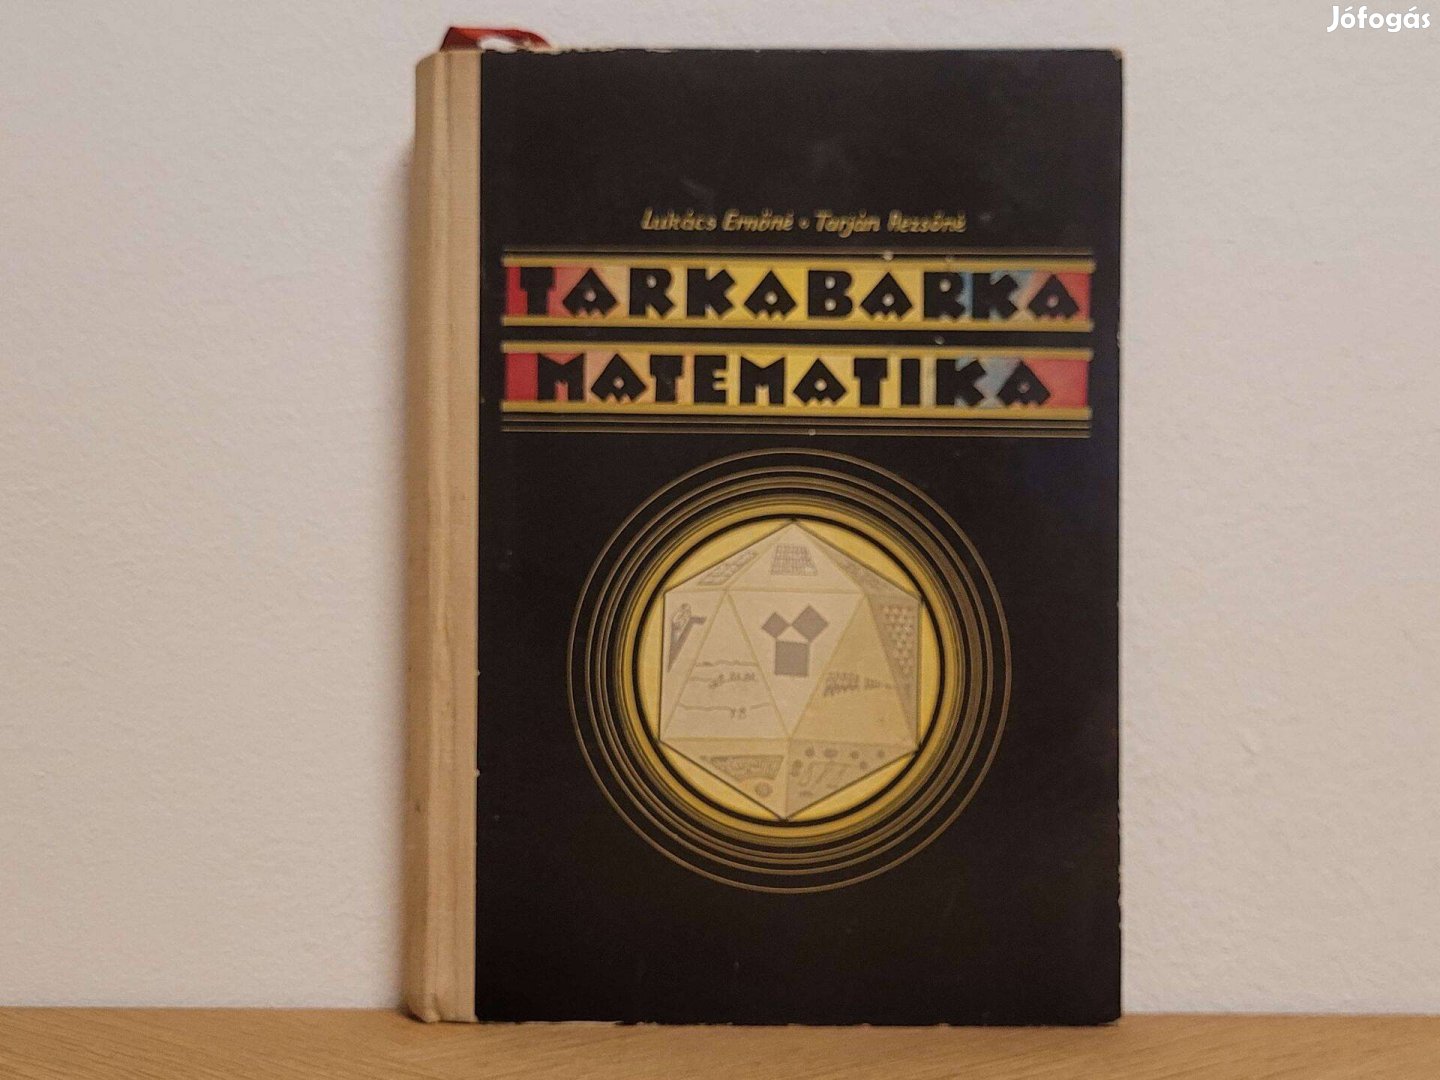 Tarkabarka matematika - Lukács Ernőné, Tarján Rezsőné könyv eladó